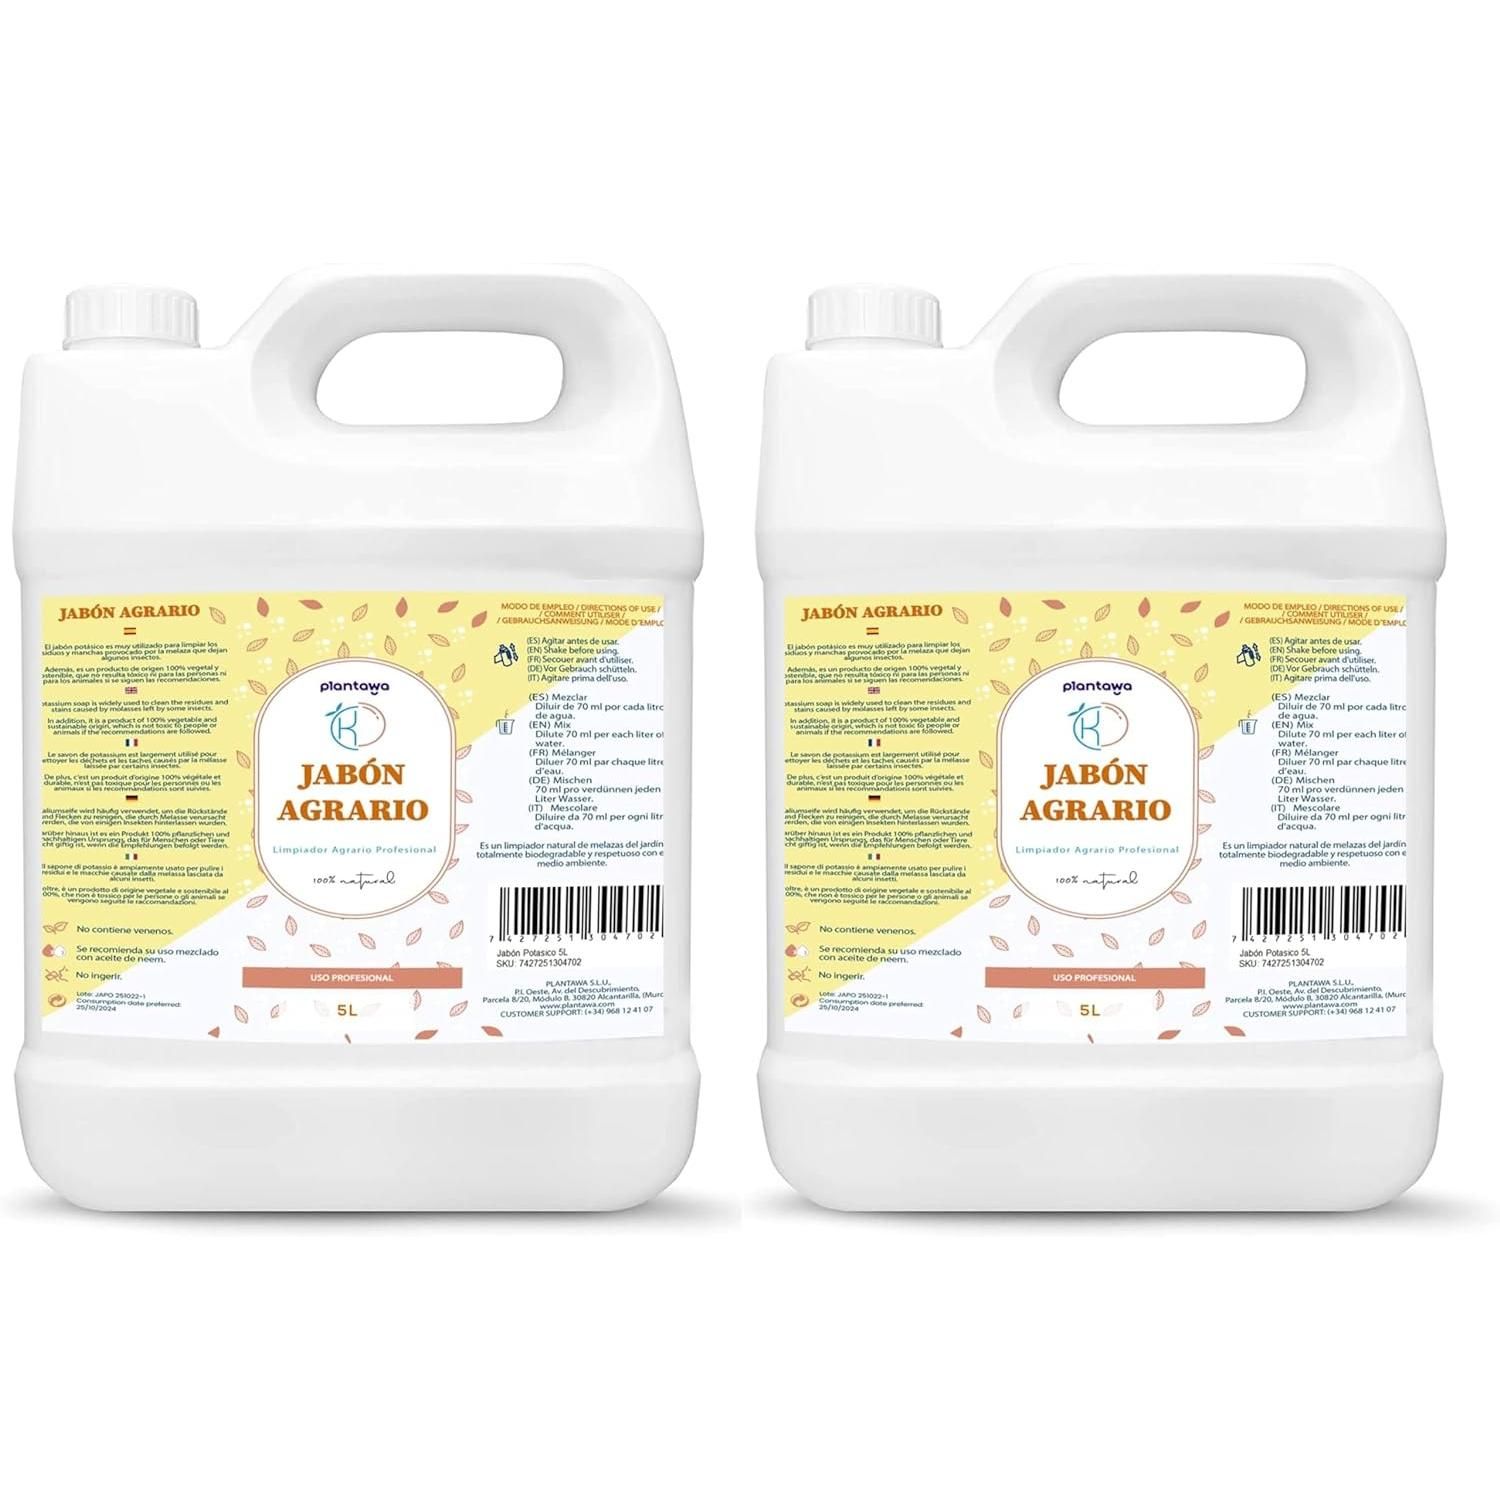 Protección Total: Jabón Potásico, Aceite de Neem, Cola de Caballo y Abono.  5l. Listo Uso. Protección, Prevención y Curación de Enfermedades Fúngicas e